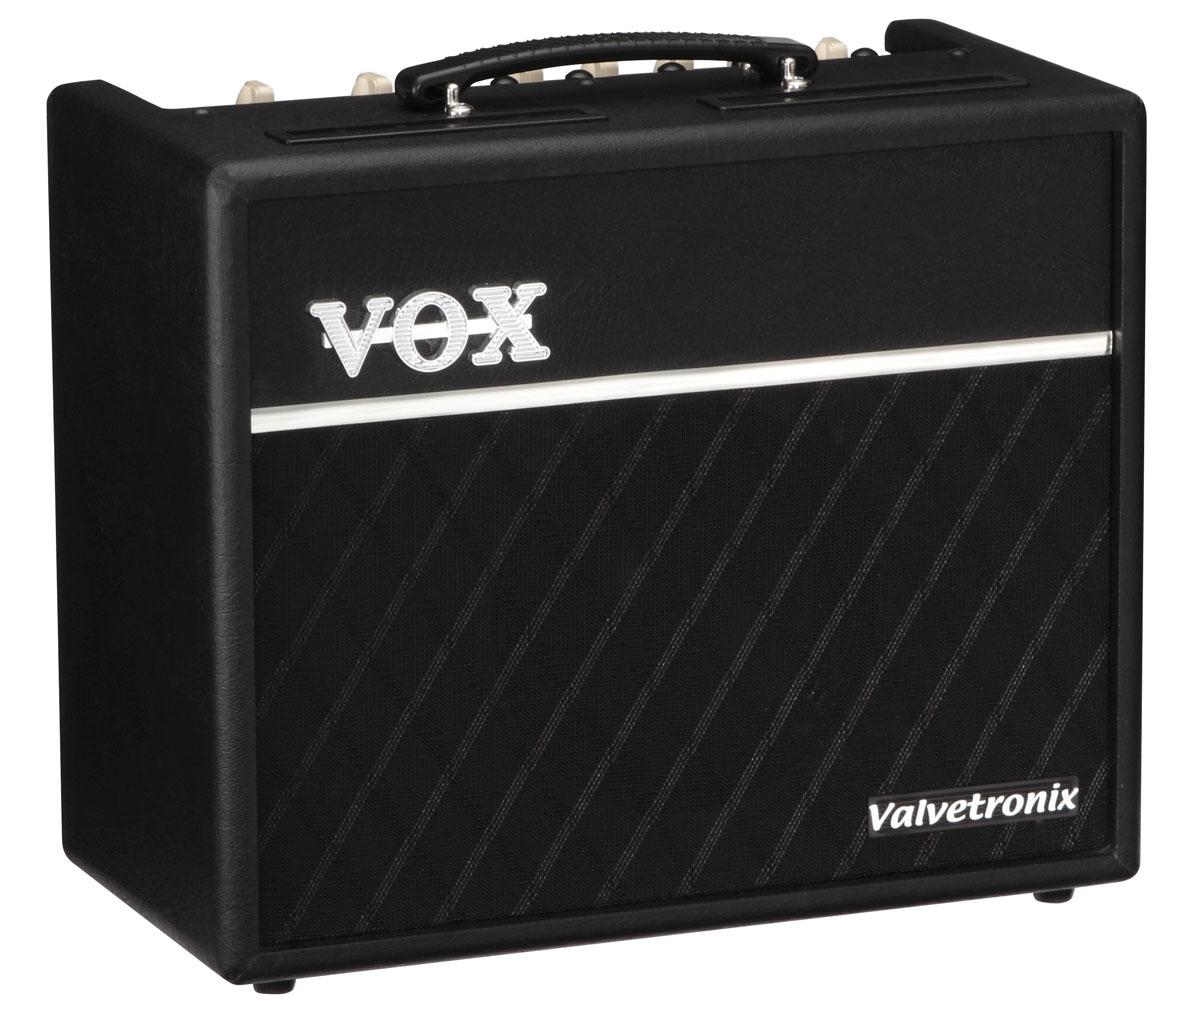 Foto Vox Vt20+ Amplificador Guitarra